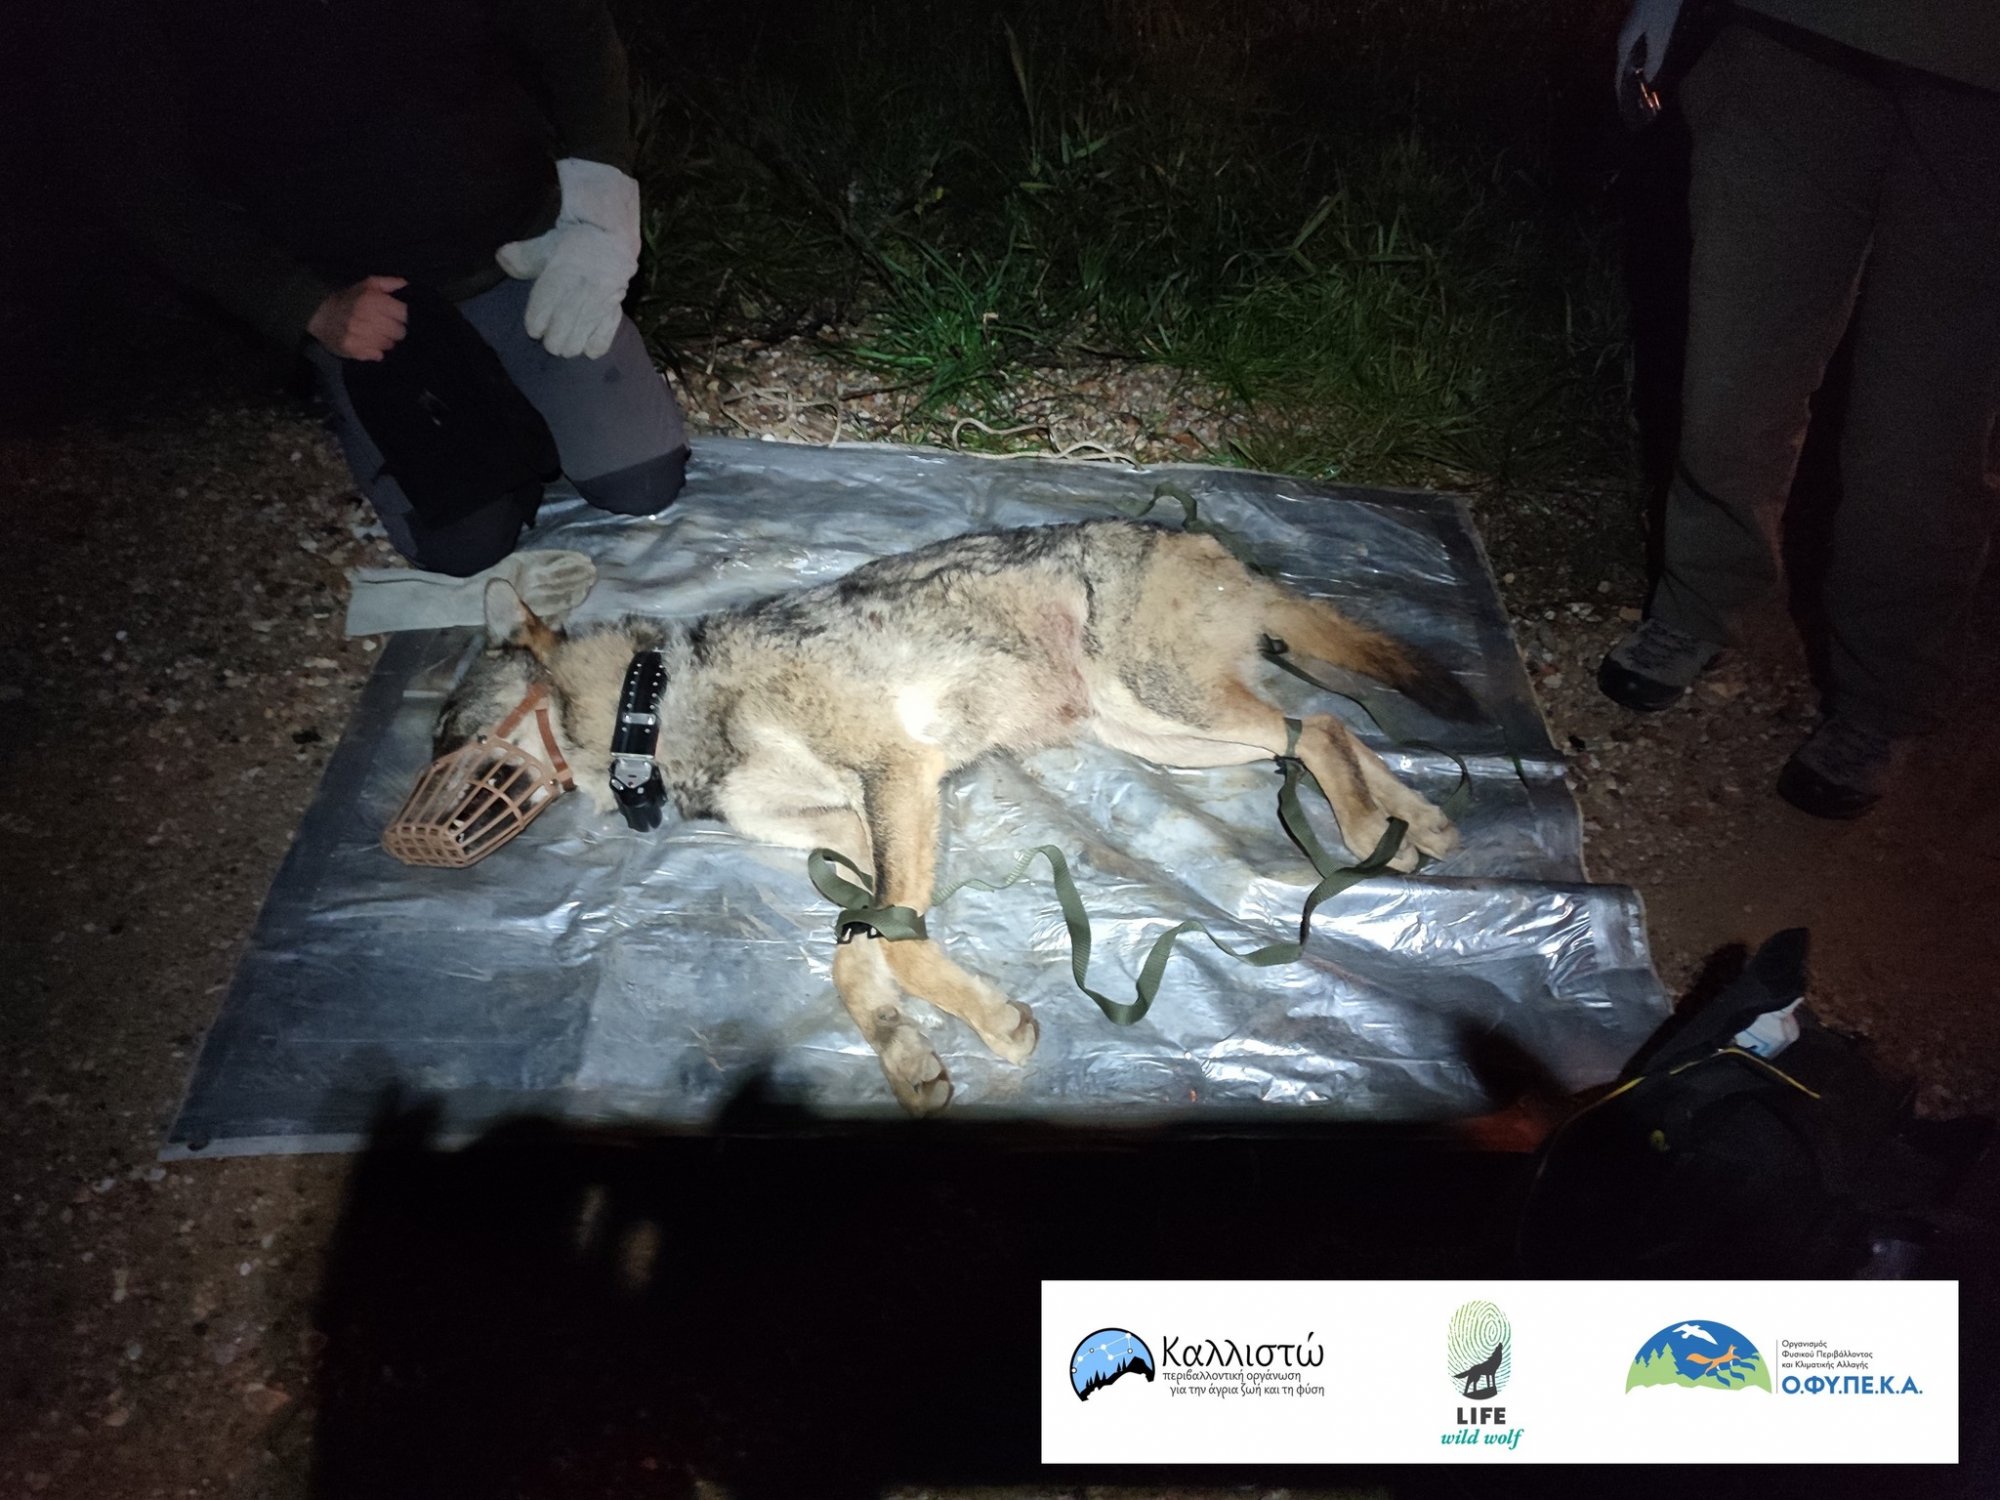 Καλλιστώ: Απομακρύνθηκε λύκος από την Αμυγδαλέζα και επανεντάχθηκε σε κοντινή δασική περιοχή